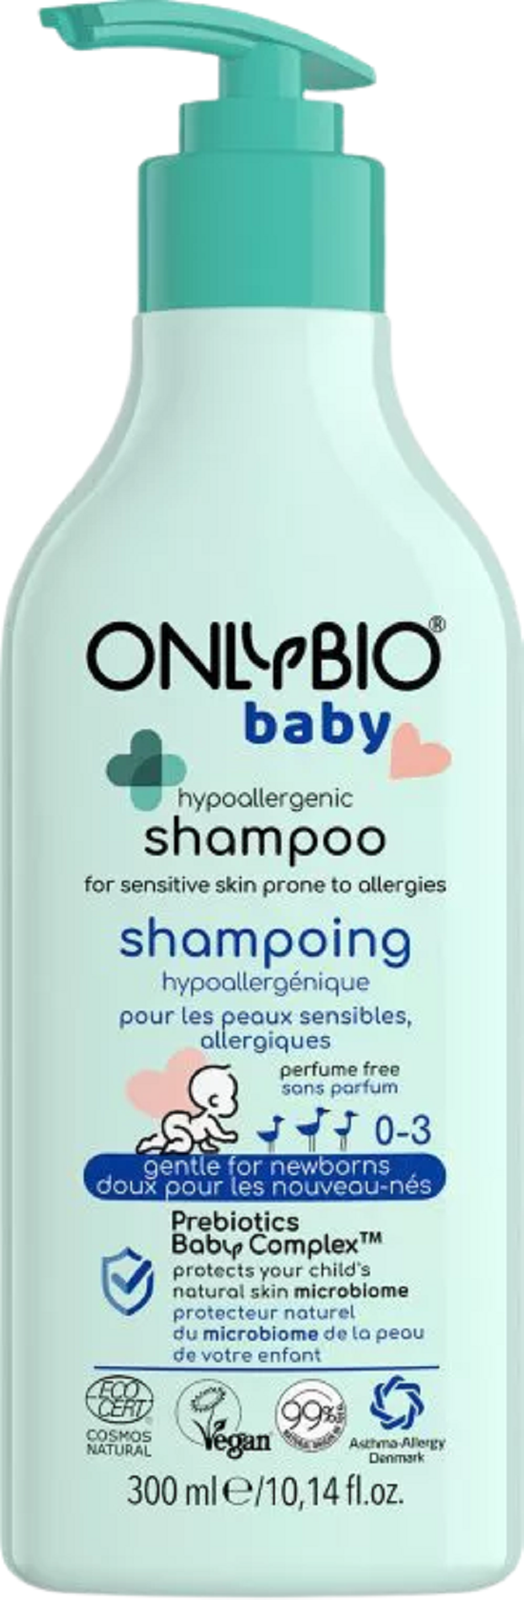 onlybio hipoalergiczny szampon dla dzieci opinie